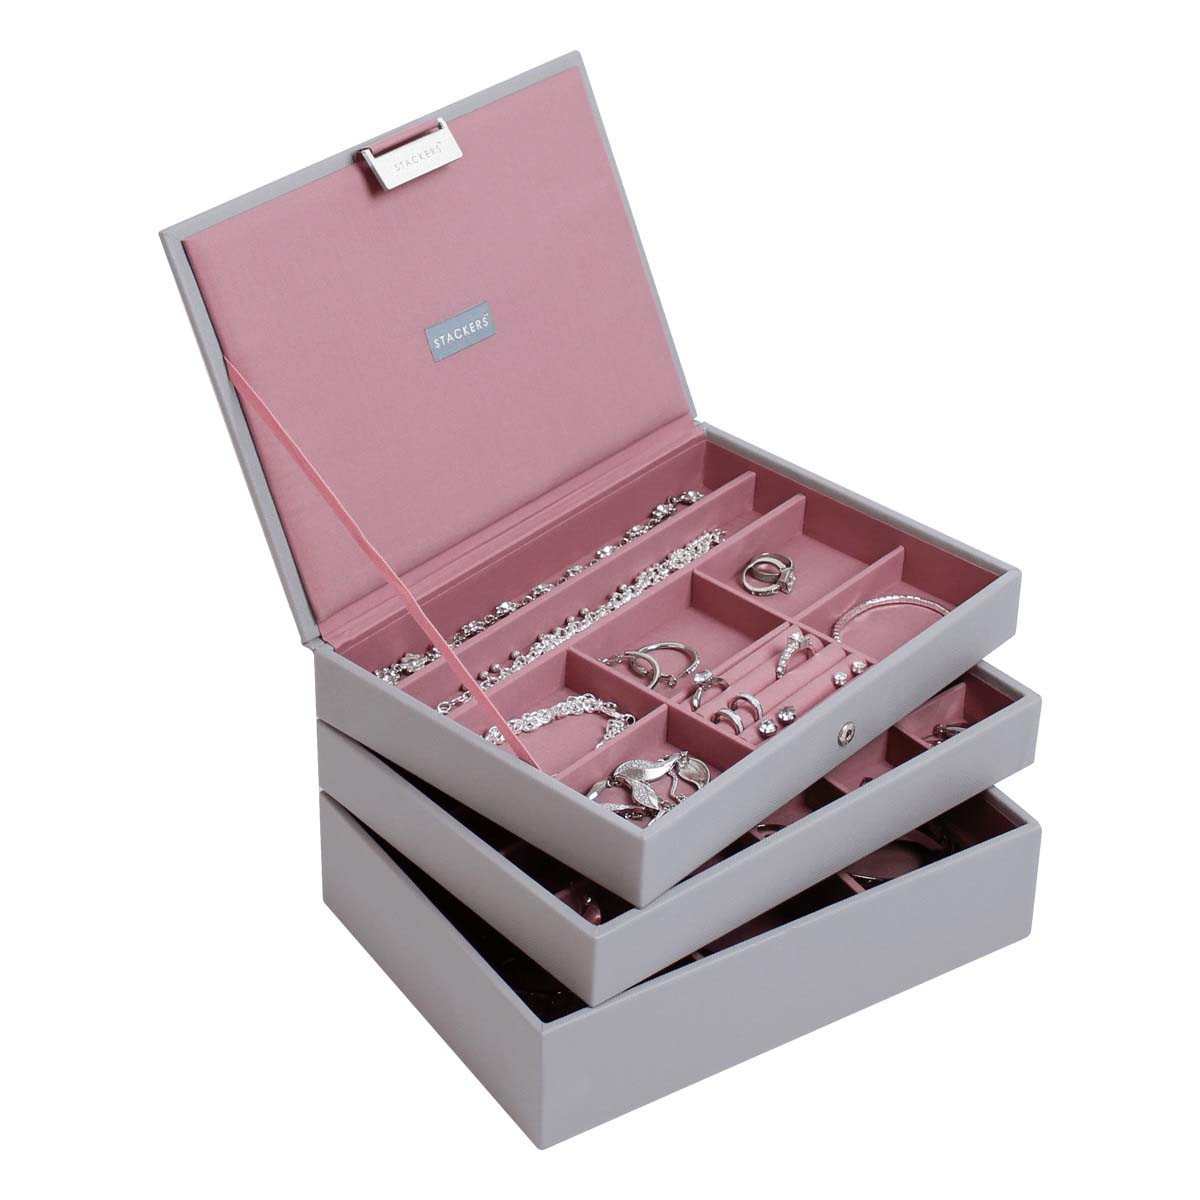 Stackers Pudełko na biżuterię potrójne classic Stackers różowo-szare 73653